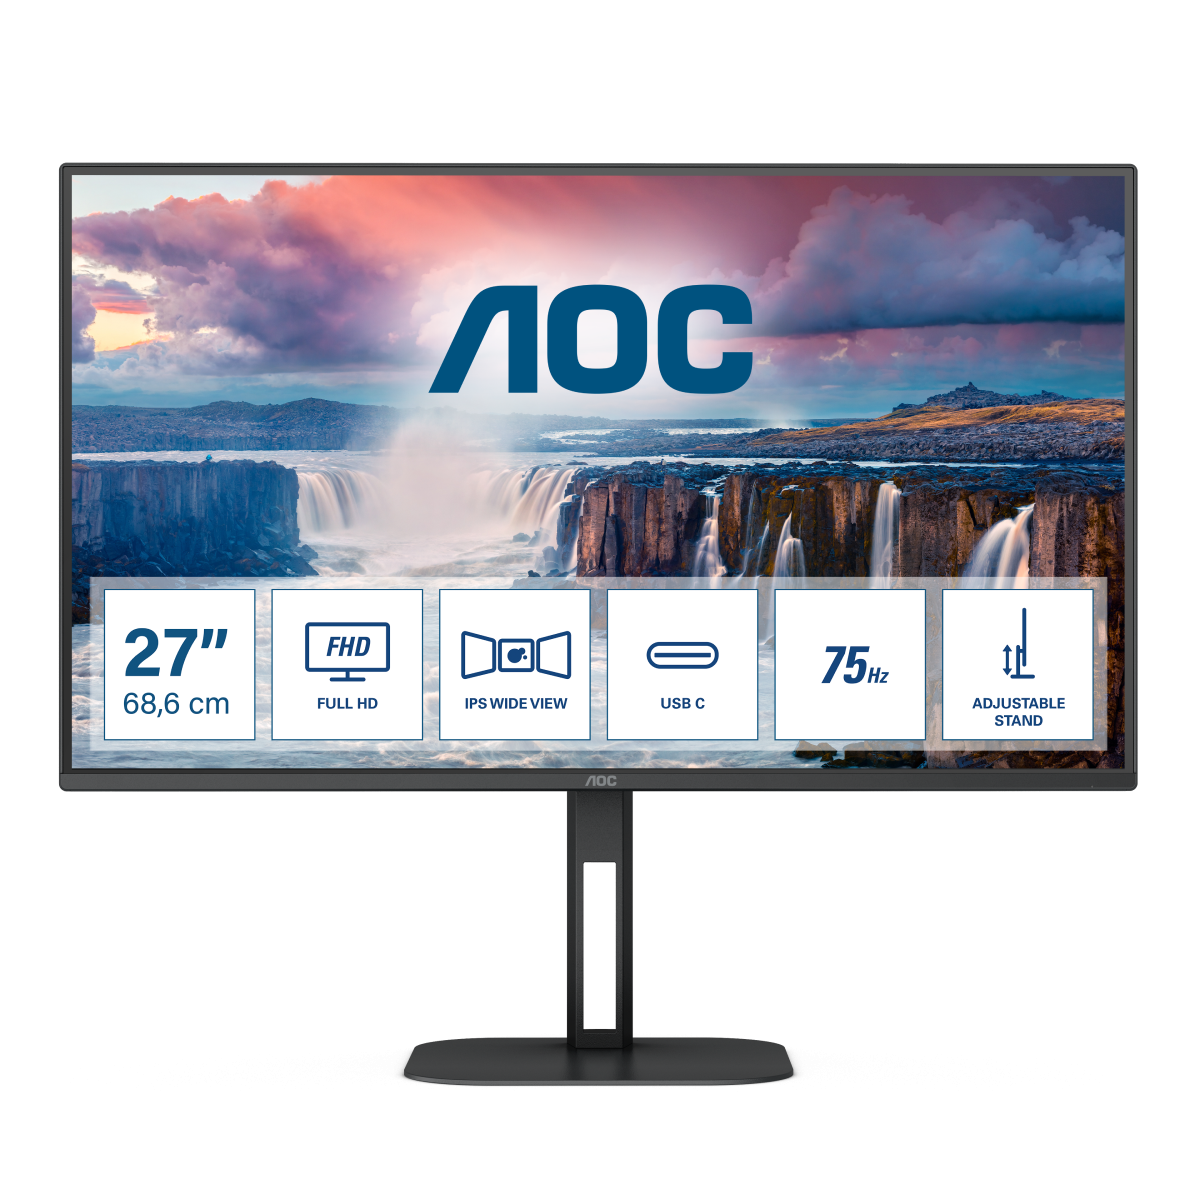 Монитор для дома и офиса AOC 27V5C/BK в официальном интернет магазине AGONBYAOC.ru (AOC Россия)